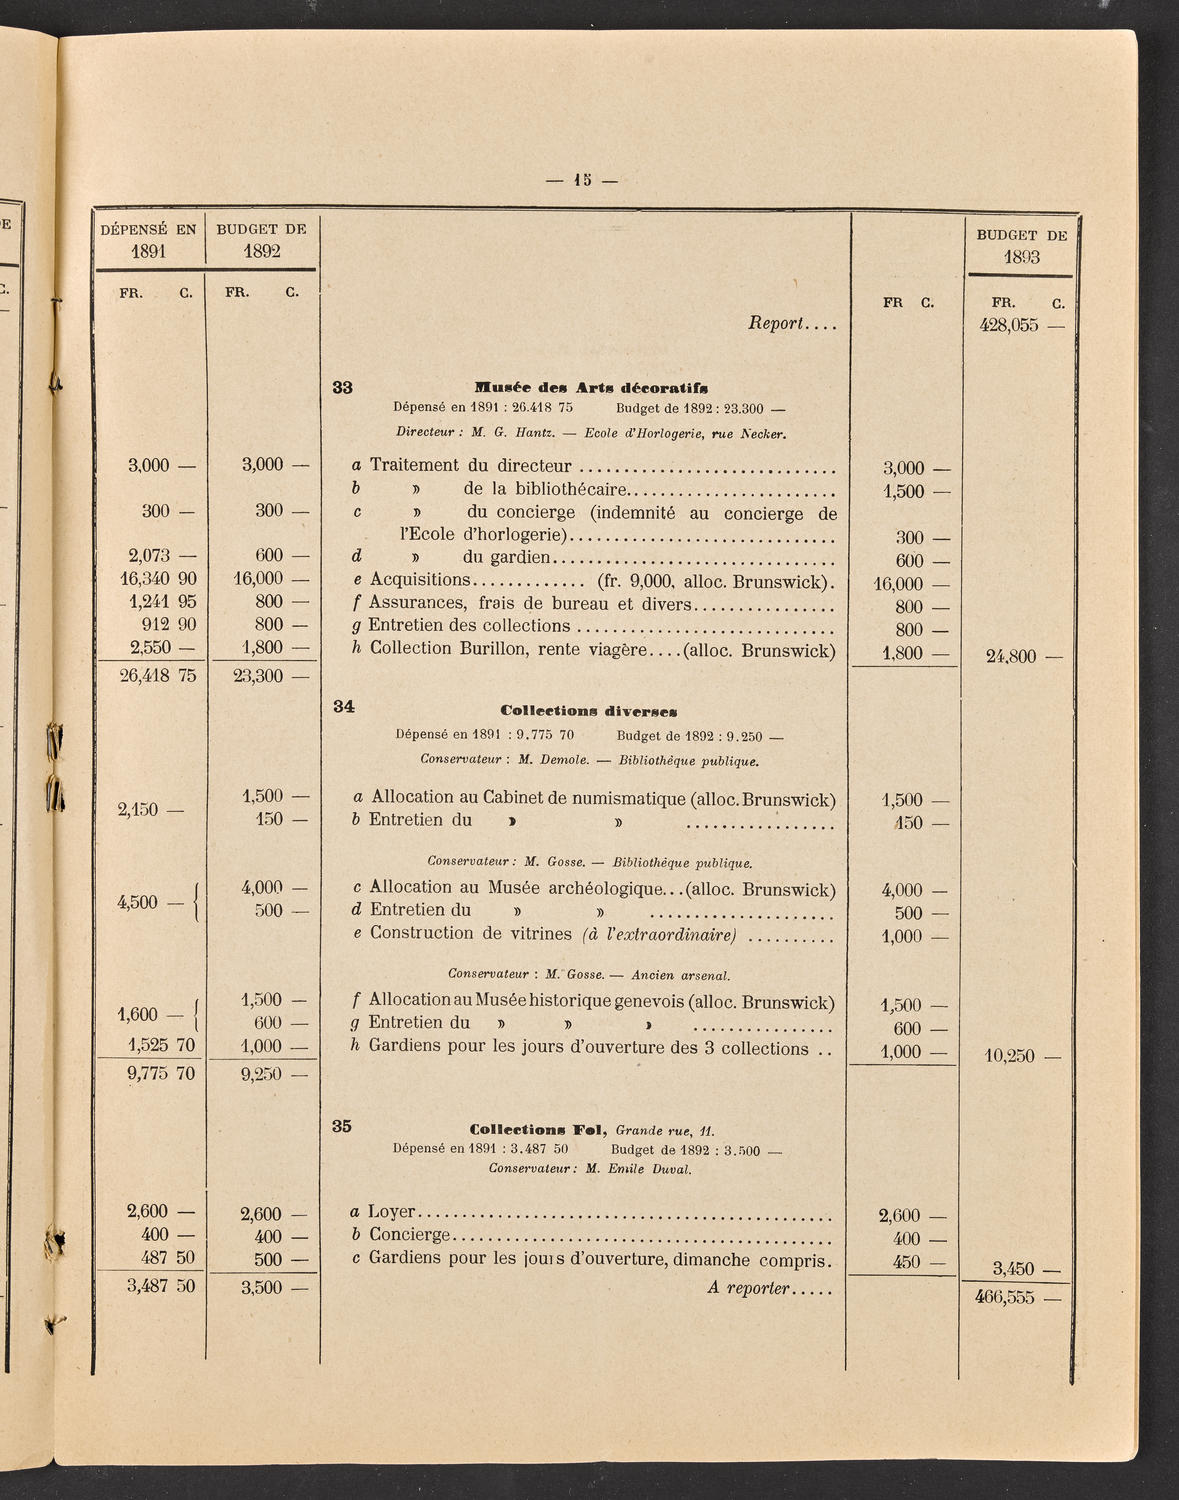 Budget de la Ville de Genève - Exercise de 1893, page 21 of 32